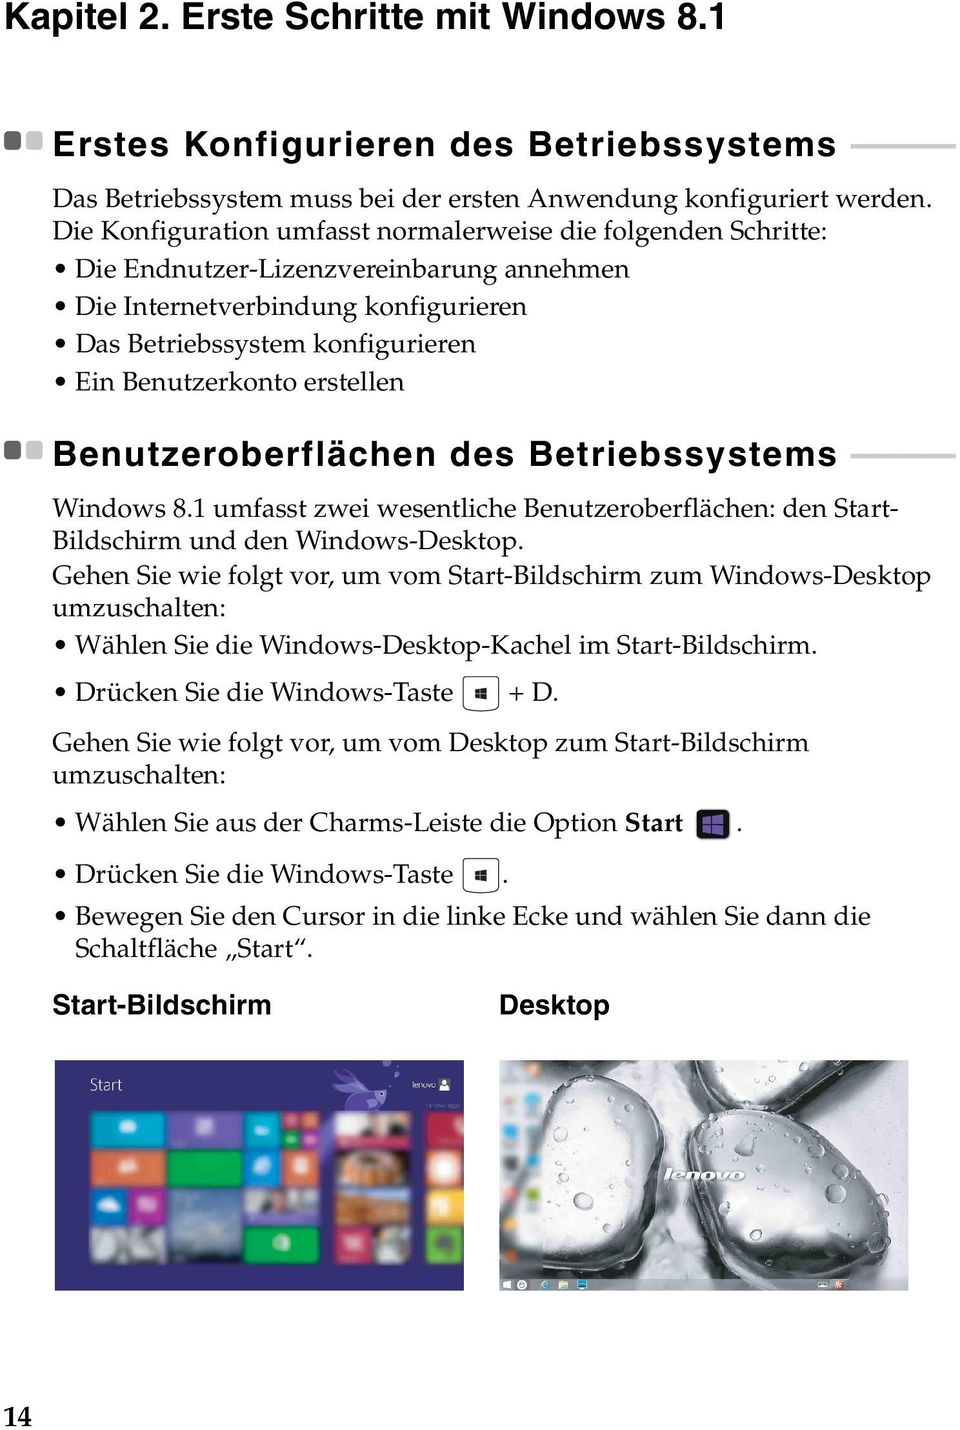 erstellen Benutzeroberflächen des Betriebssystems - - - - - - - - - - - - - - Windows 8.1 umfasst zwei wesentliche Benutzeroberflächen: den Start- Bildschirm und den Windows-Desktop.